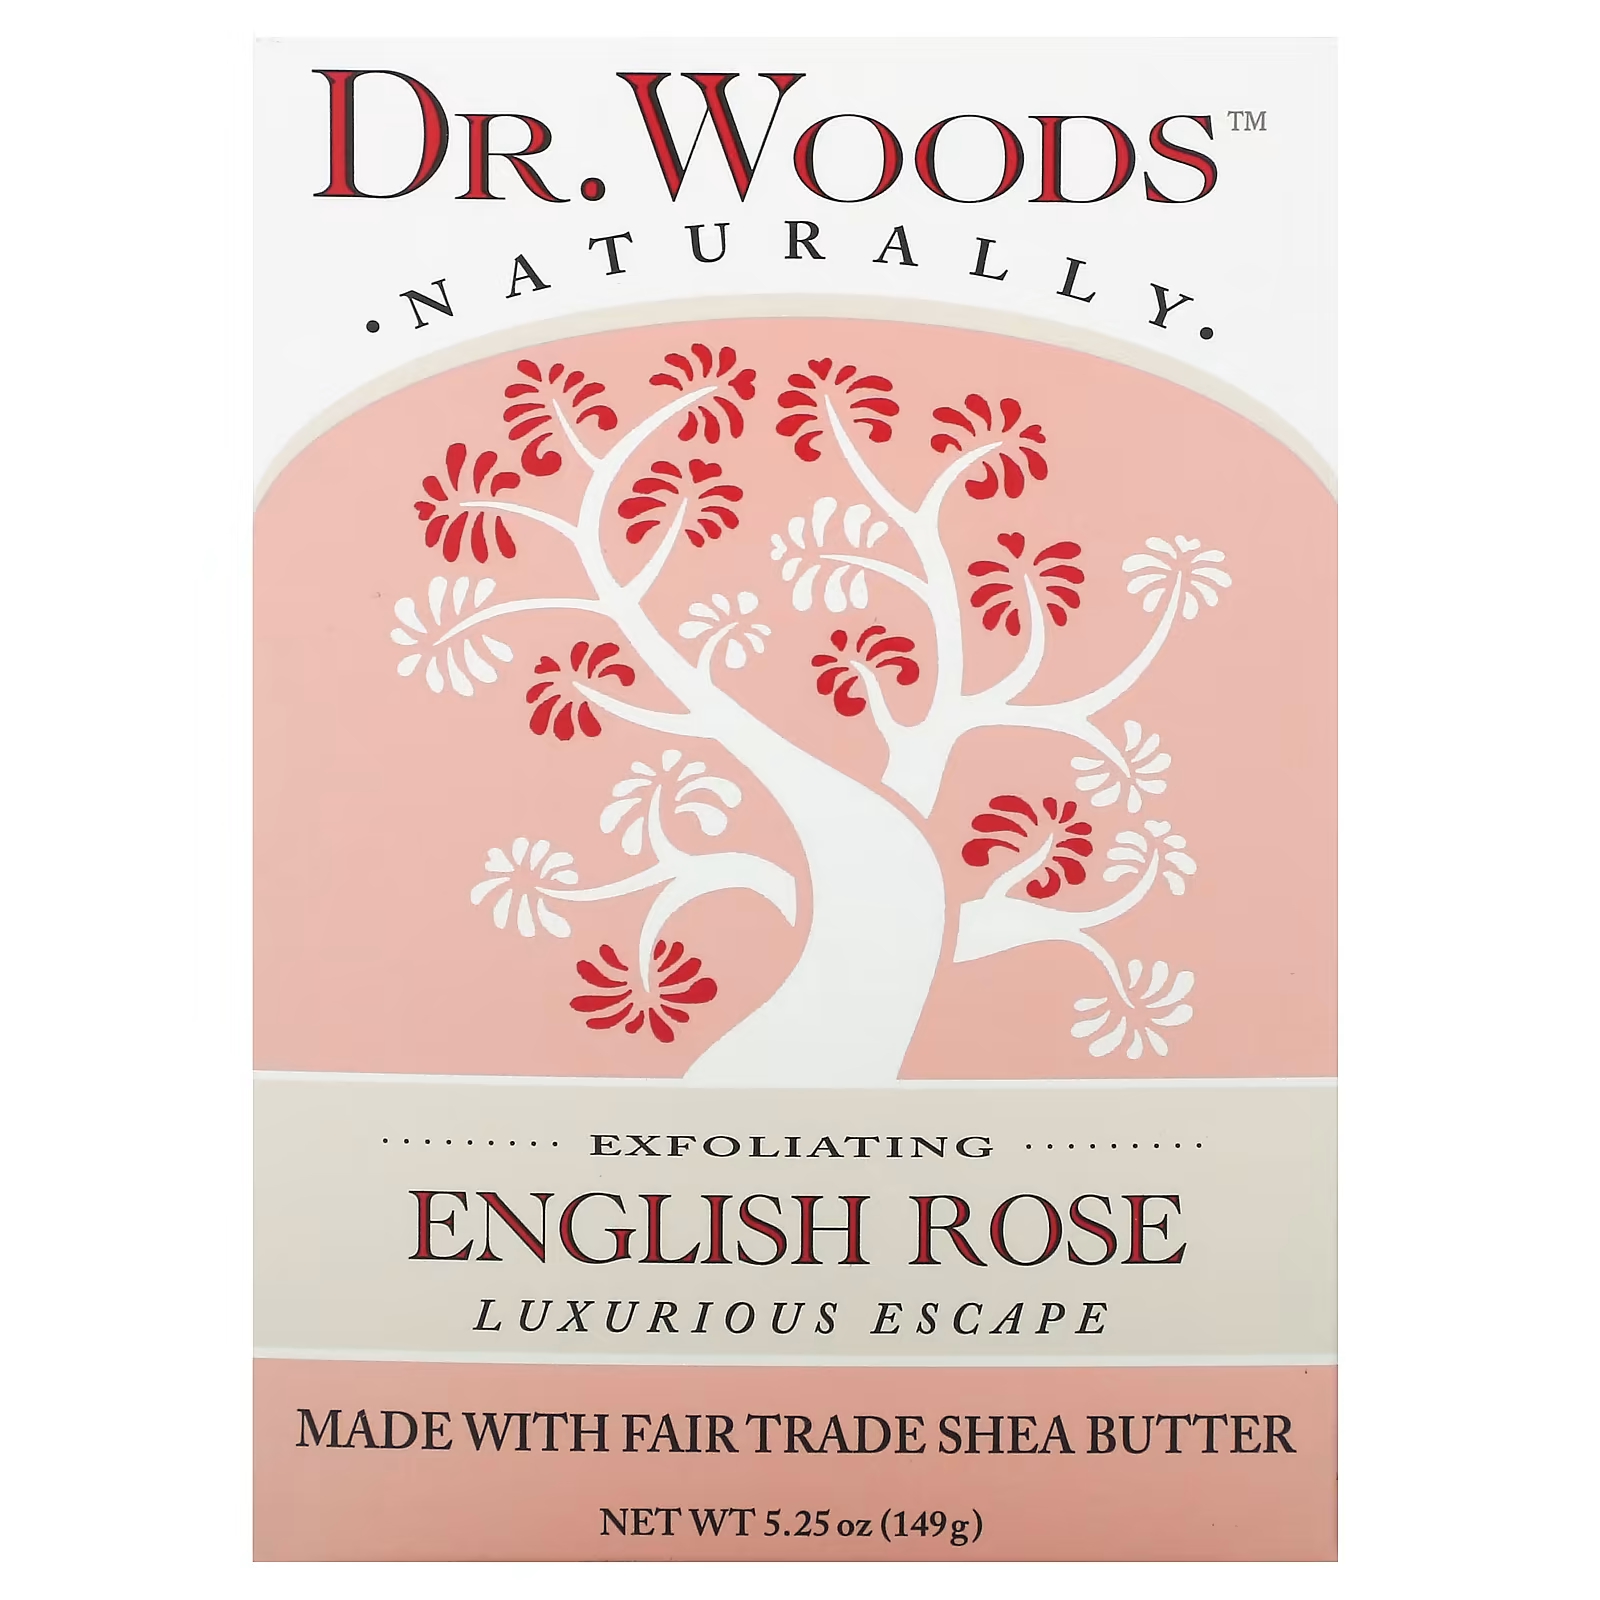 Woods Отшелушивающее мыло «Английская роза», 5,25 унции (149 г) Dr. Woods dr woods сырое черное мыло для тела 149 г 5 25 унции